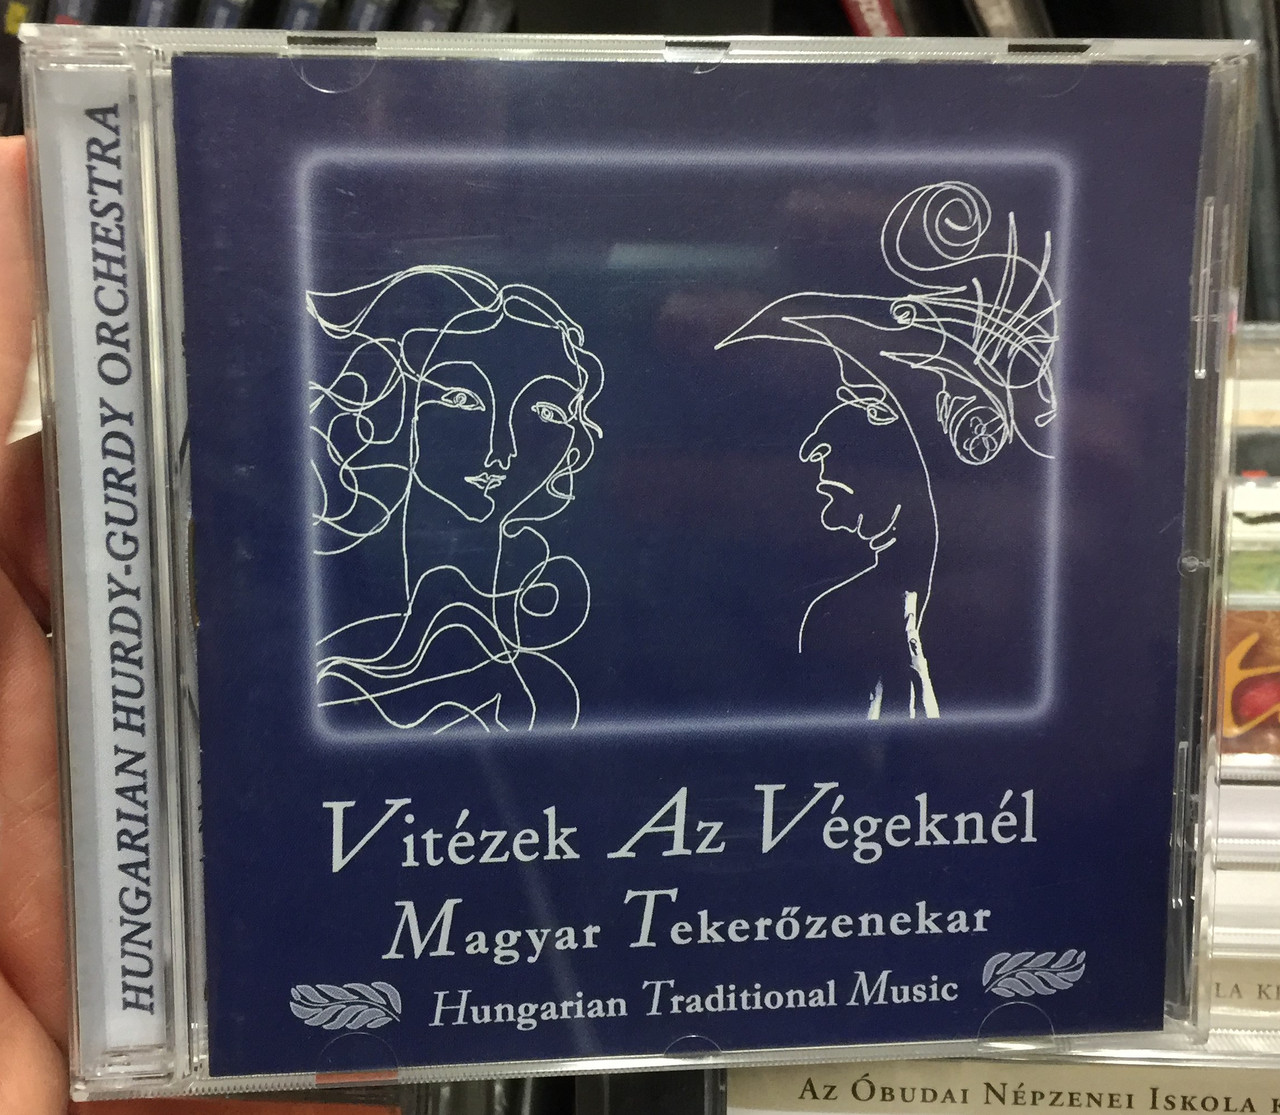 Vitézek Az Végeknél - Magyar Tekerőzenekar ‎(Hungarian Traditional Music) /  Periferic Records ‎Audio CD / 5998272704274 - bibleinmylanguage